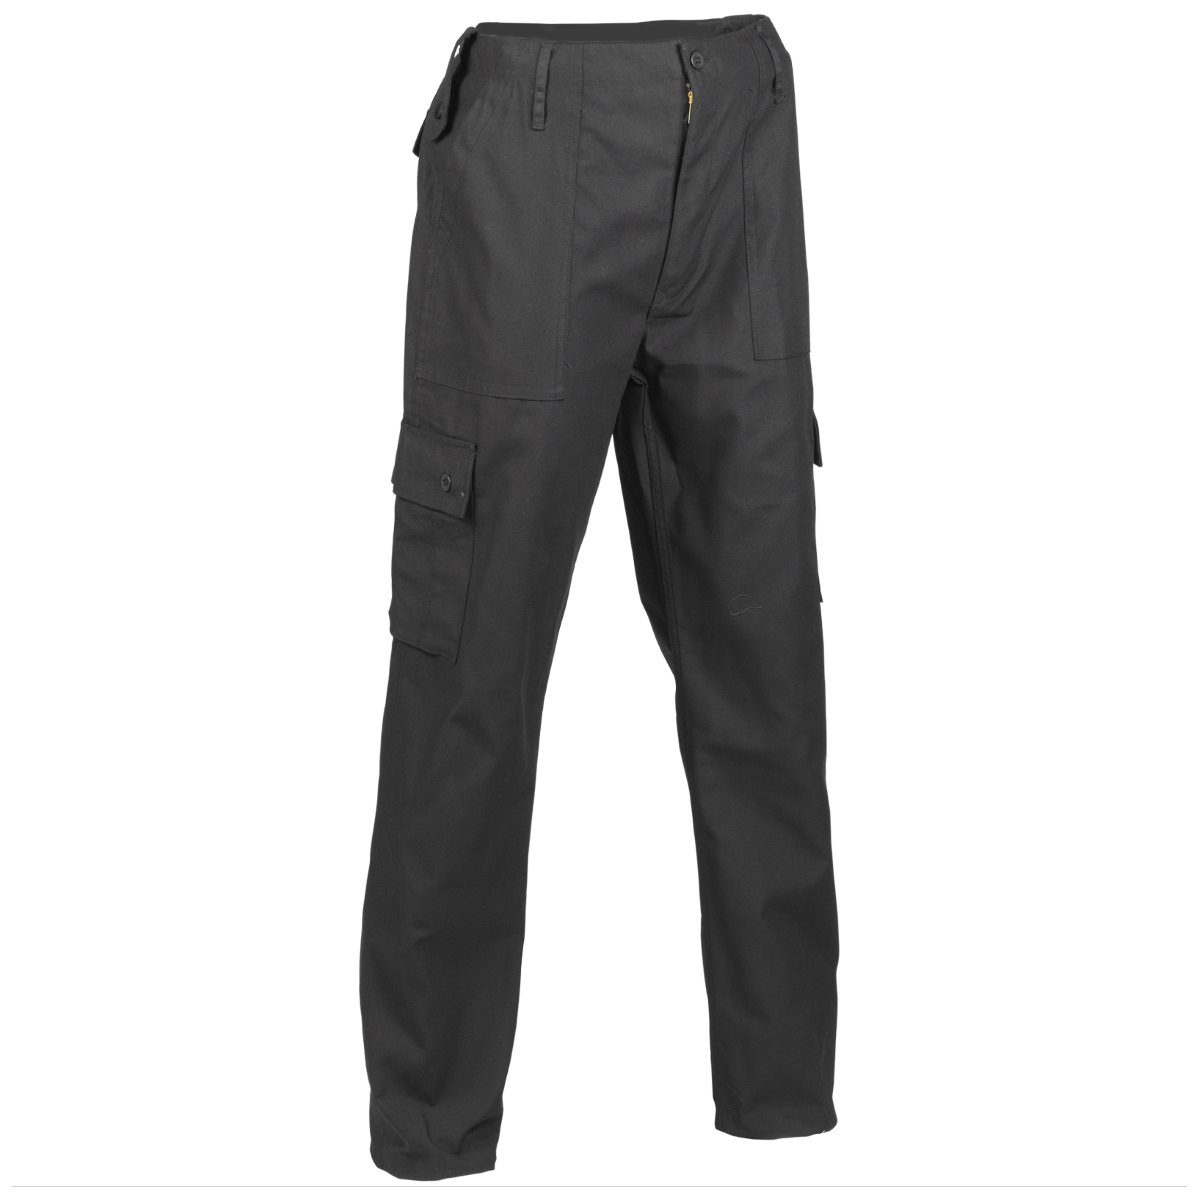 Men's Black Combat Trousers | Military Kit | Reviews on Judge.me